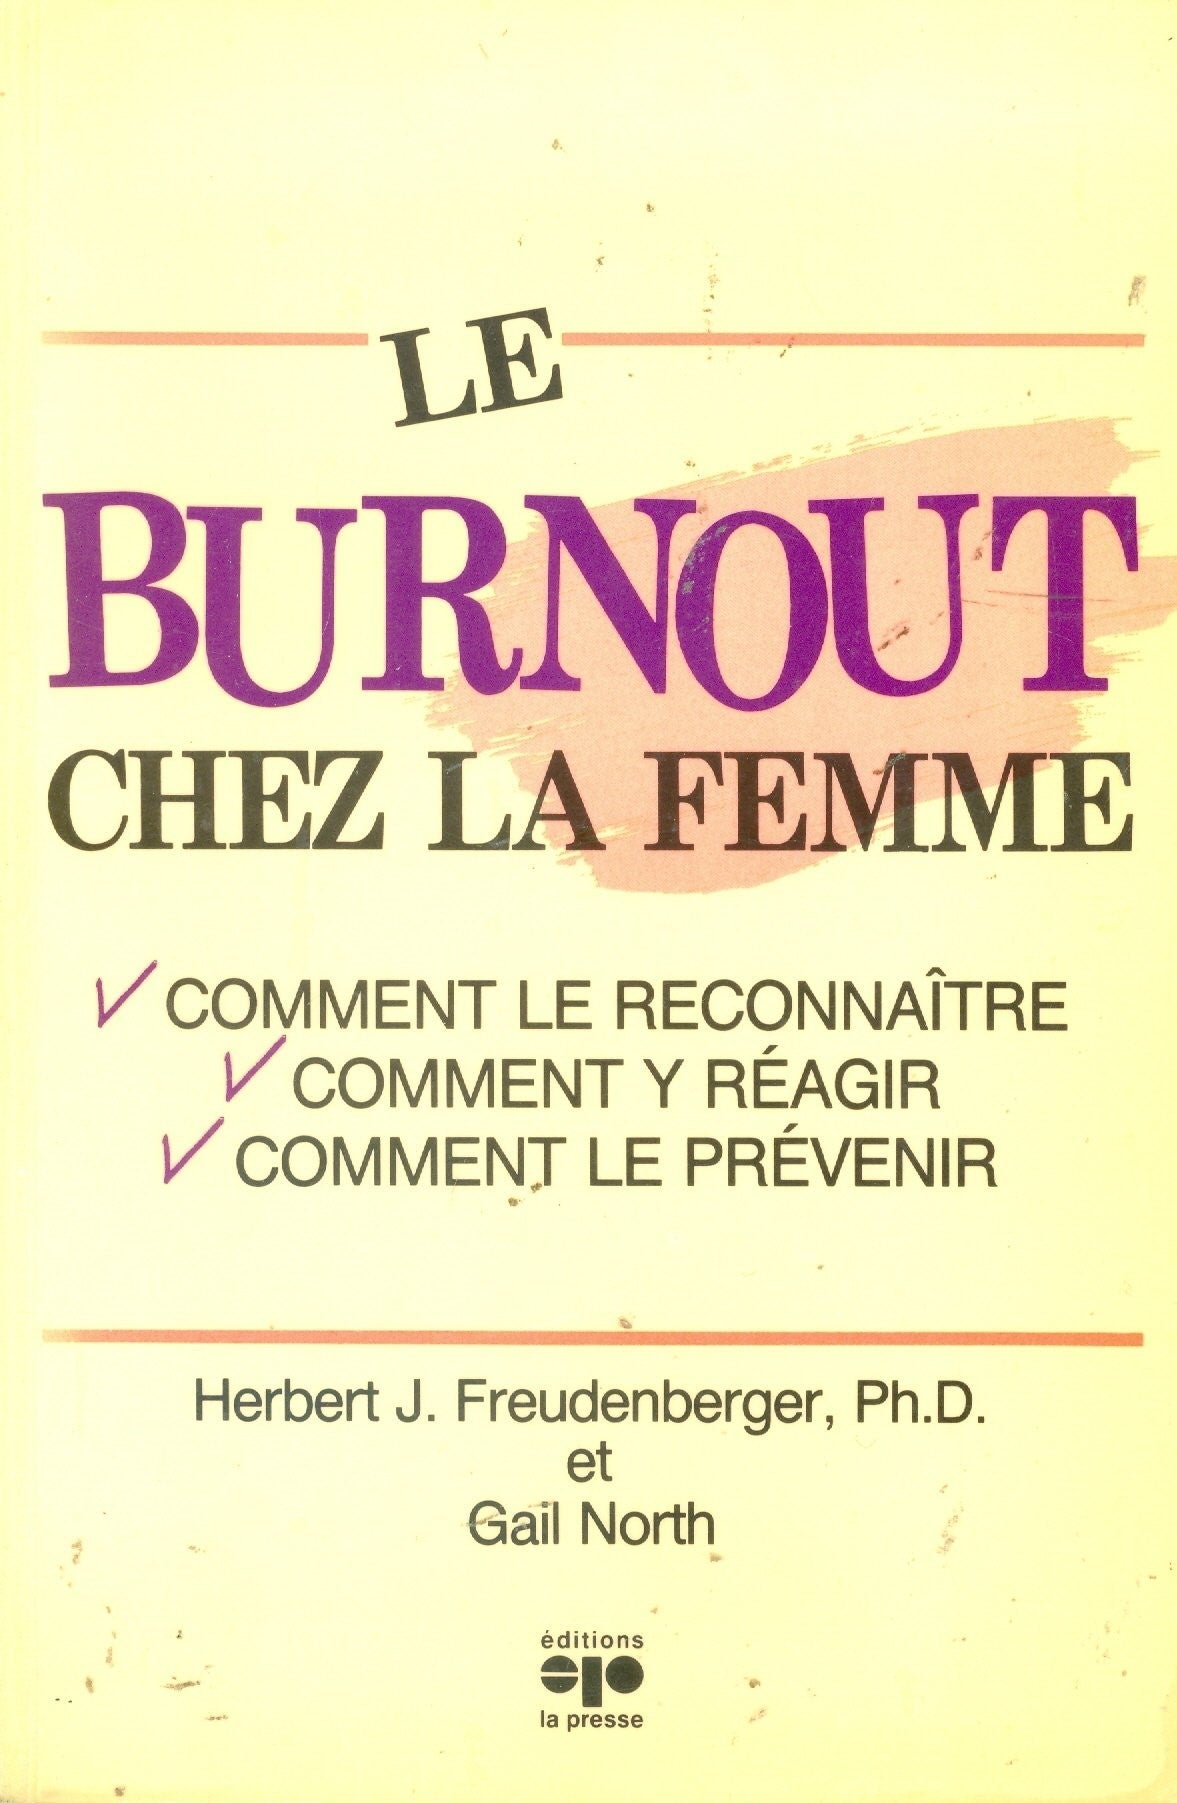 Livre ISBN 2890432610 Le burnout chez la femme (Herbert J. Freudenberger)